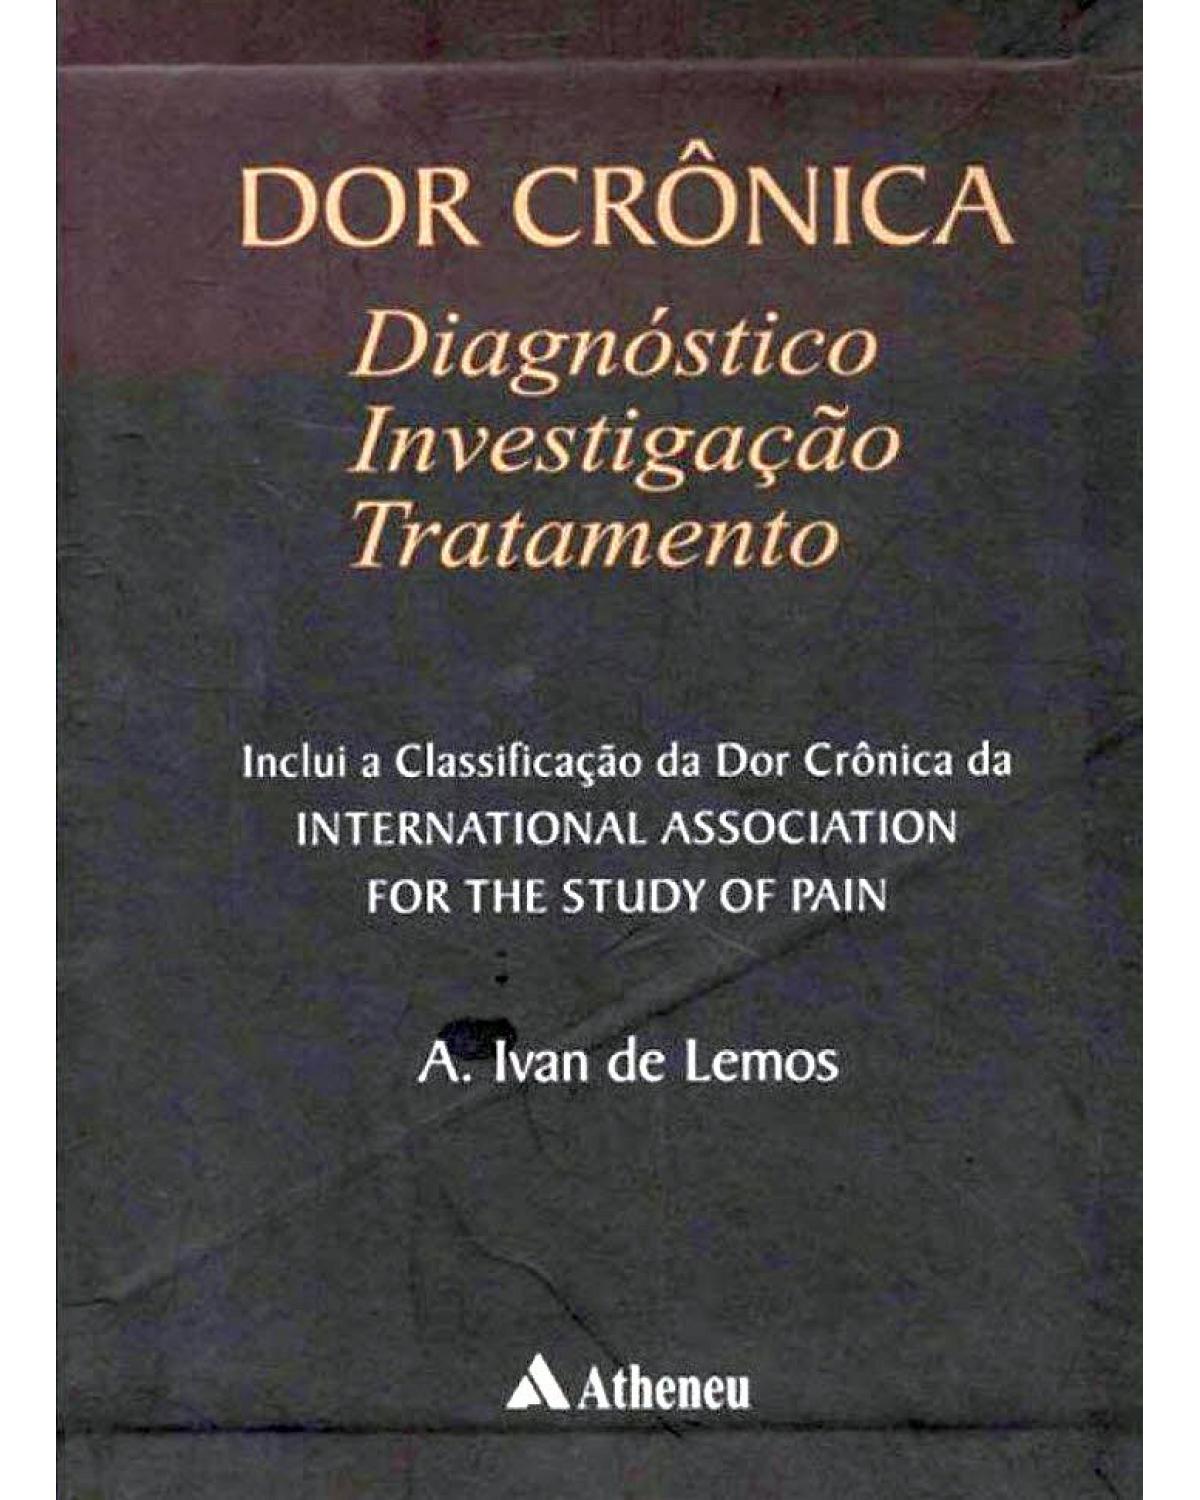 Dor crônica: diagnóstico, investigação e tratamento - 1ª Edição | 2004